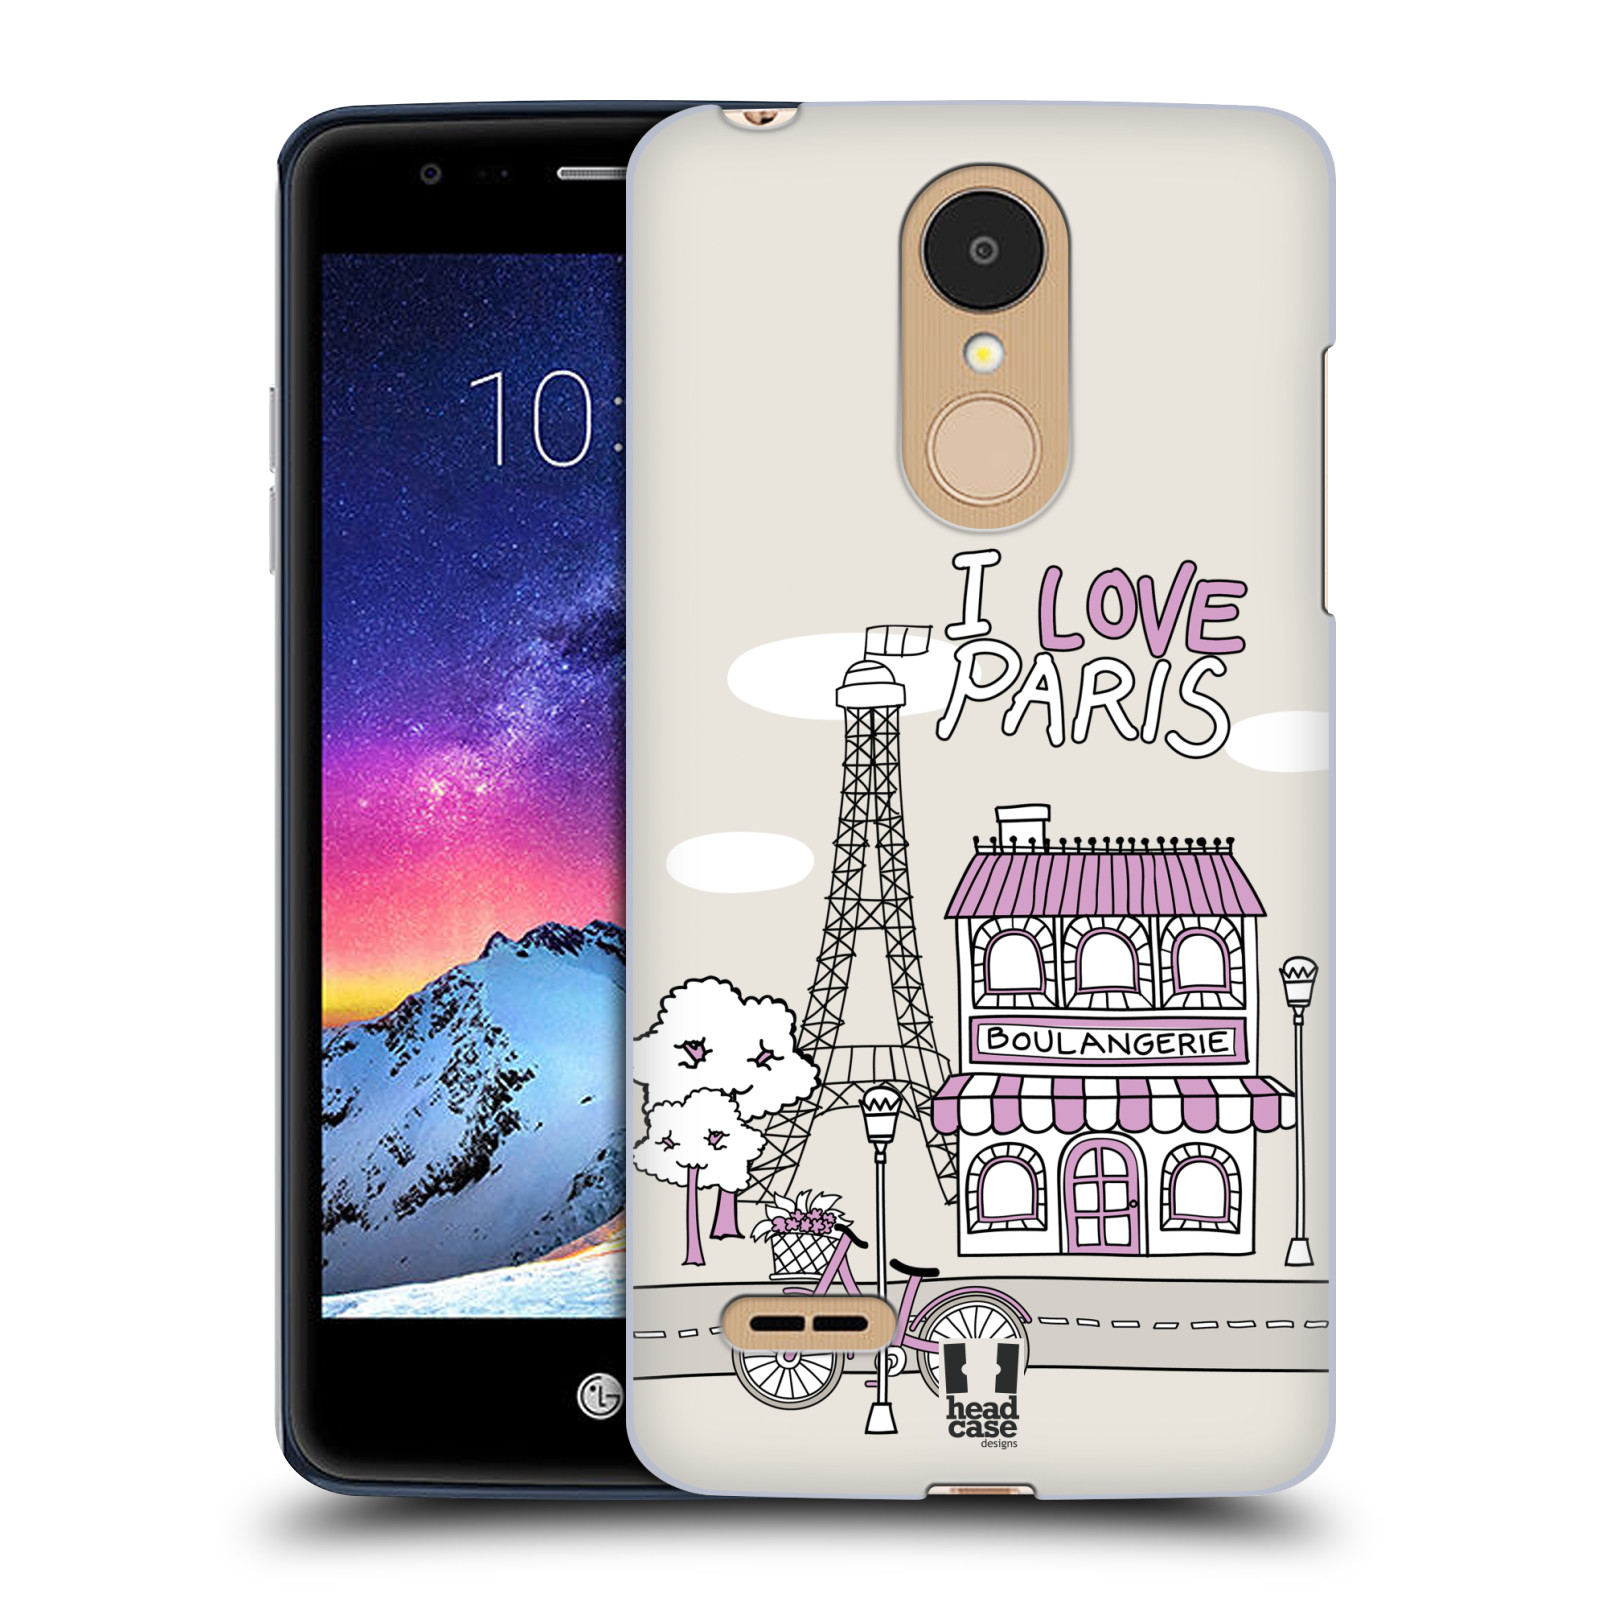 HEAD CASE plastový obal na mobil LG K9 / K8 2018 vzor Kreslená městečka FIALOVÁ, Paříž, Francie, I LOVE PARIS